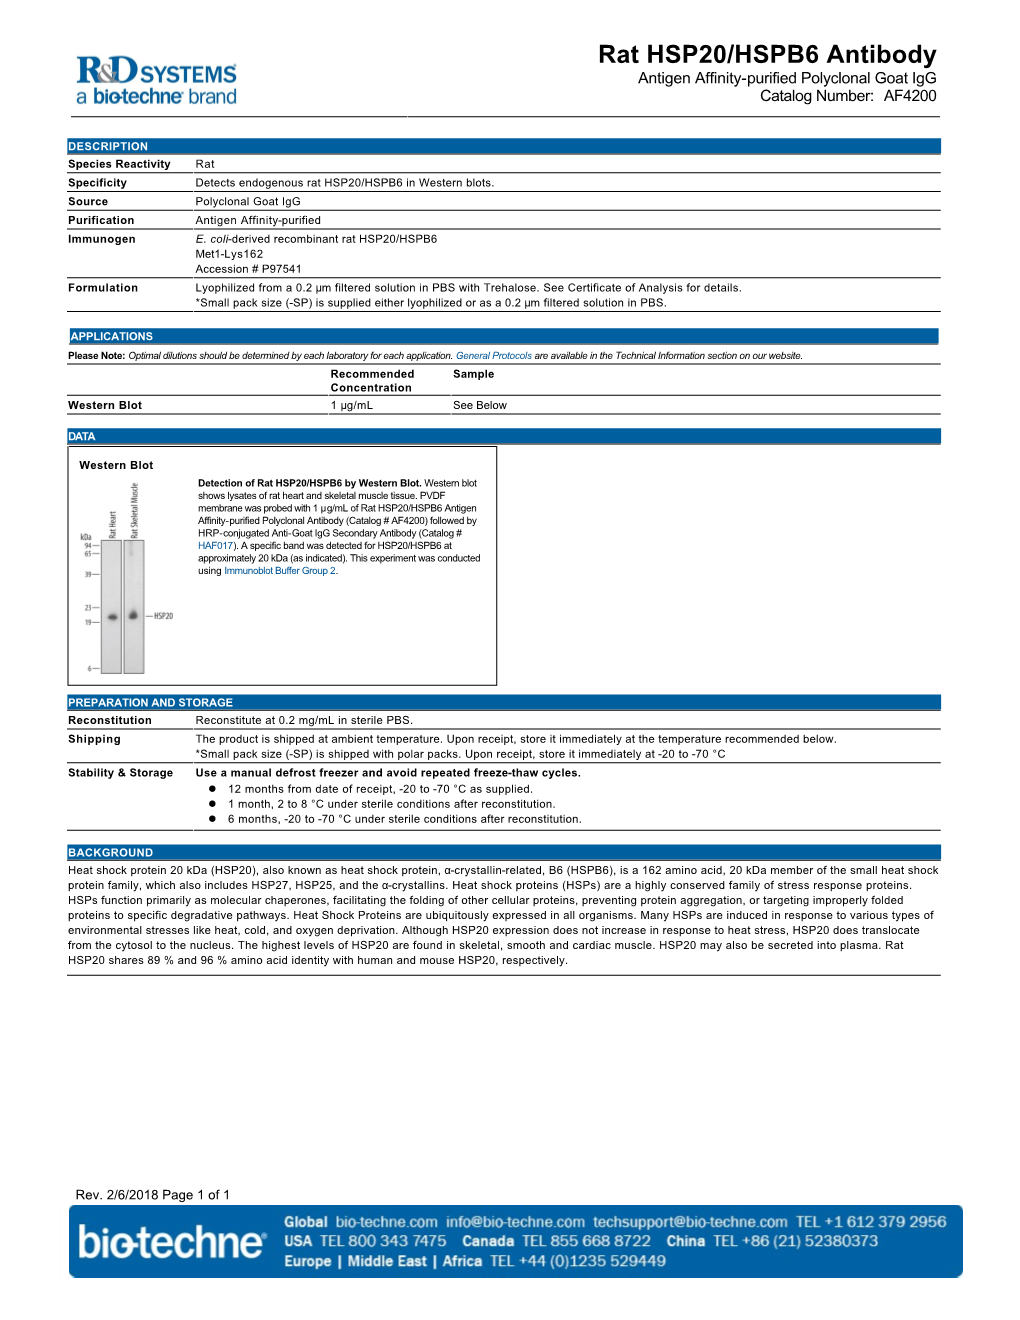 Rat HSP20/HSPB6 Antibody Antigen Affinity-Purified Polyclonal Goat Igg Catalog Number: AF4200